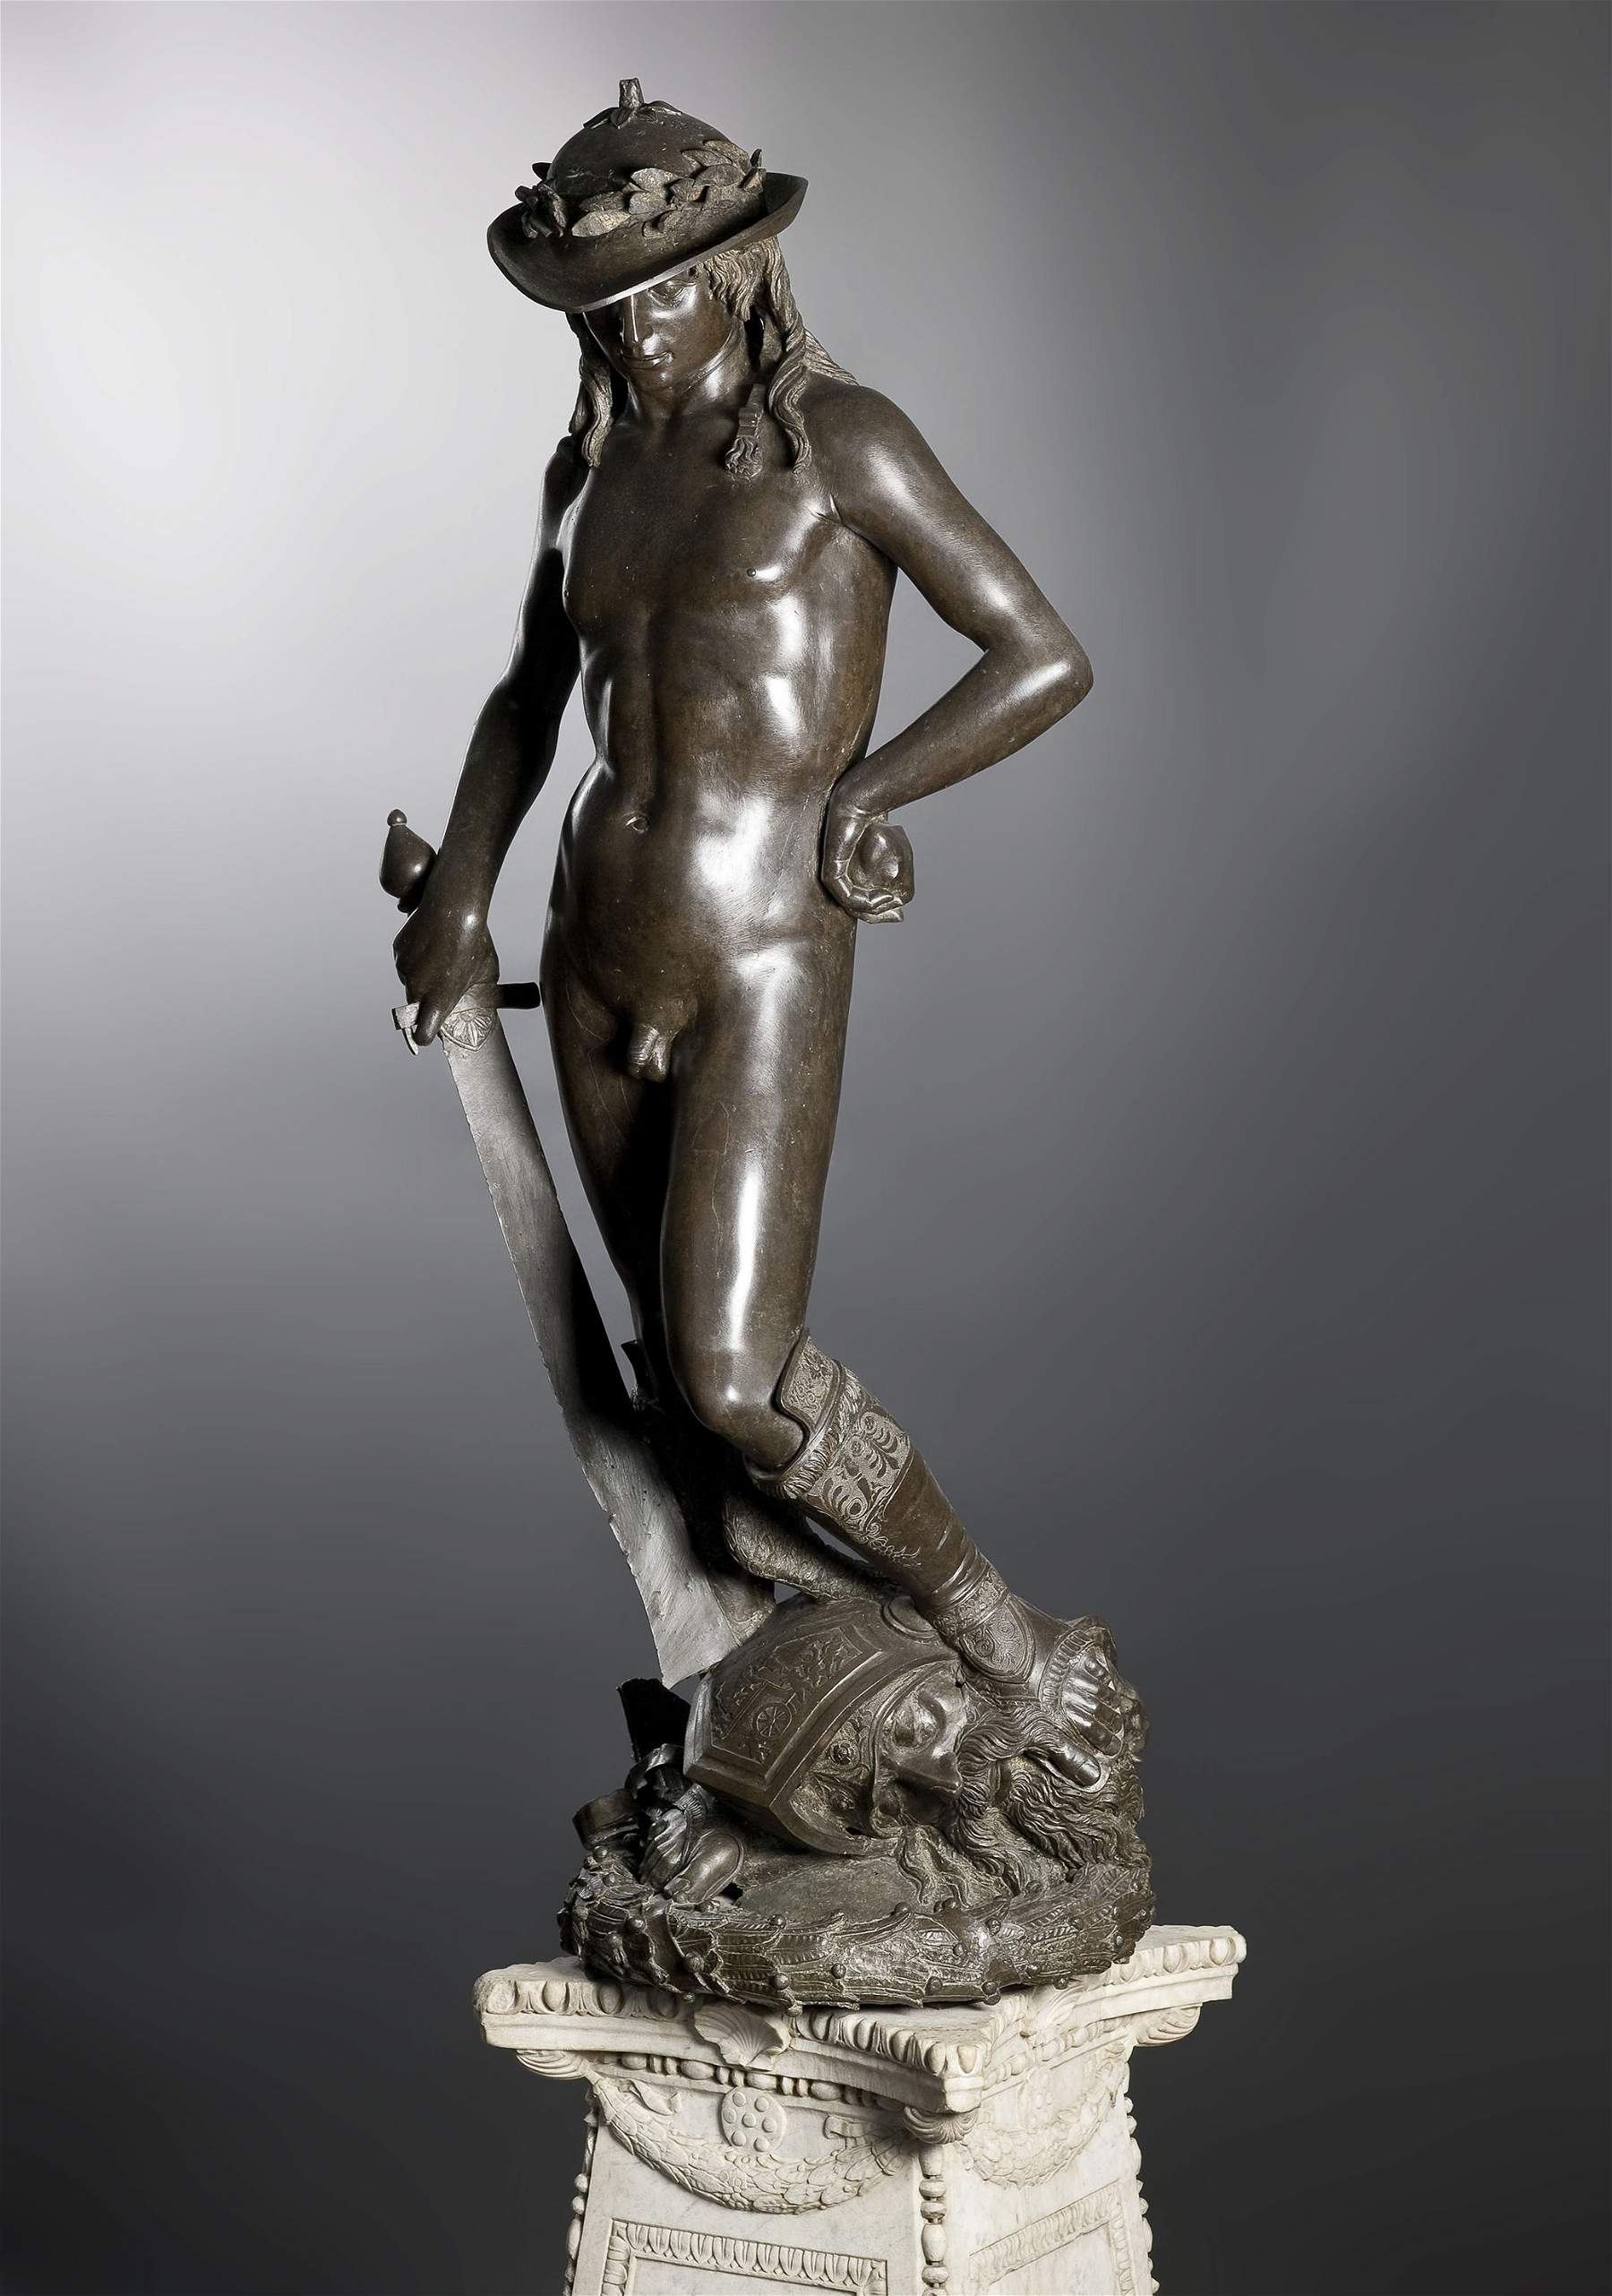 Renaissance sculpture: origins, development, major artists 